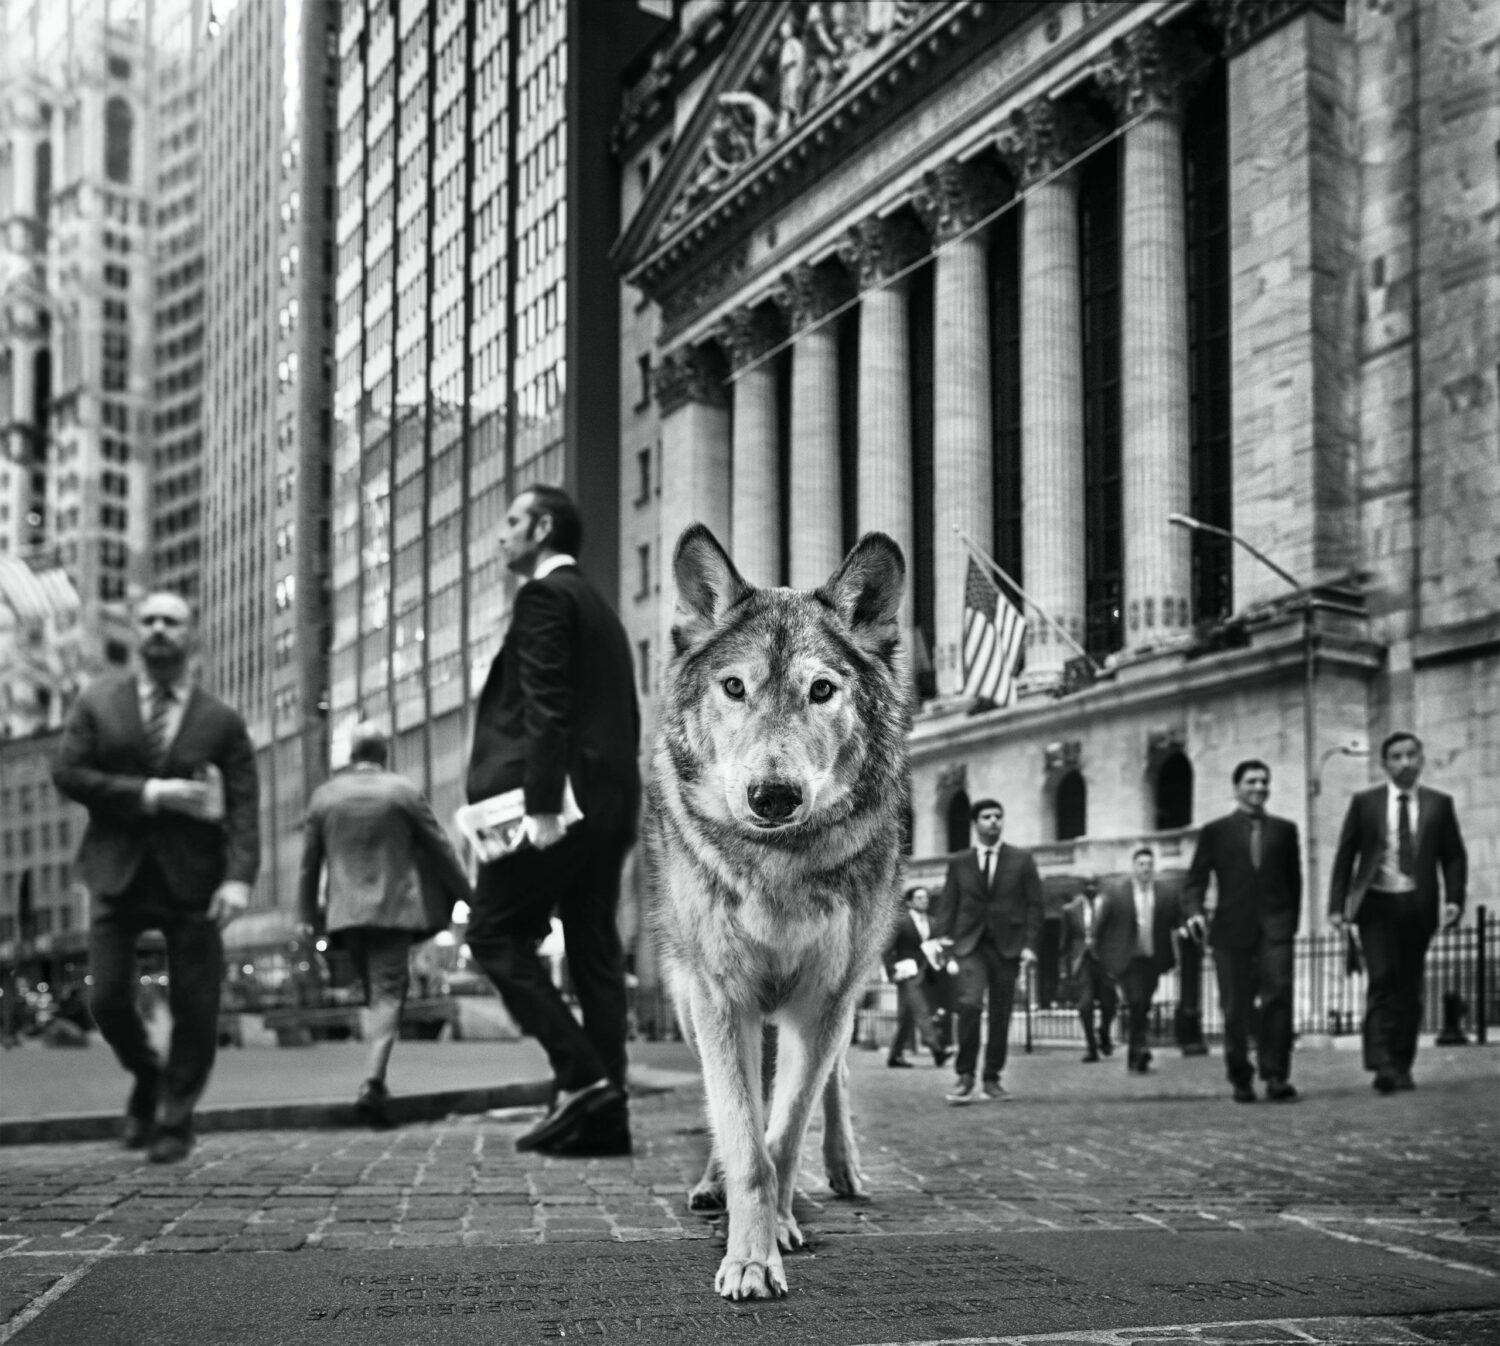 David Yarrow: Wall Street